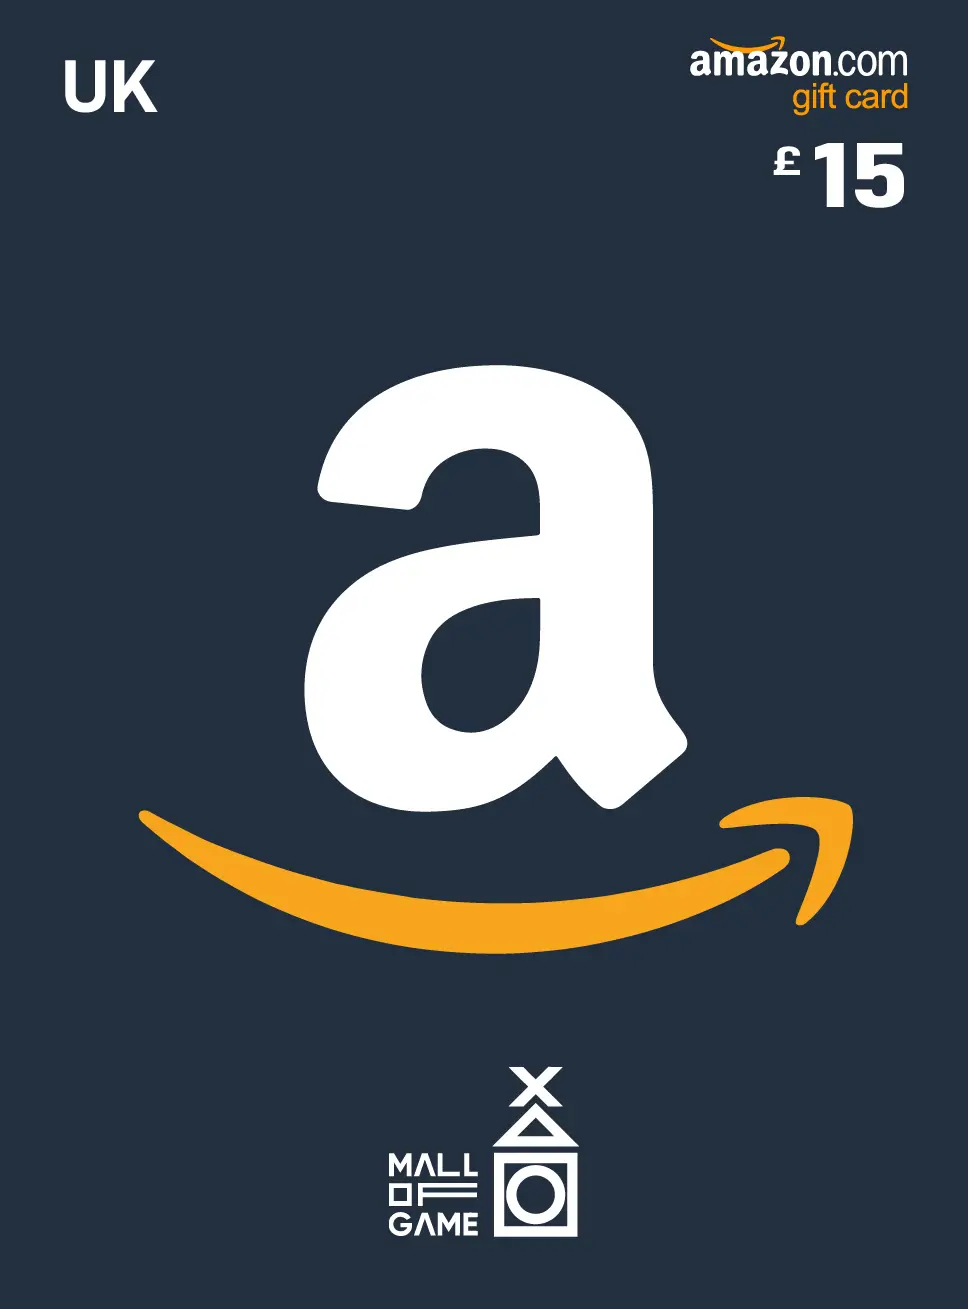 Amazon 15 GBP